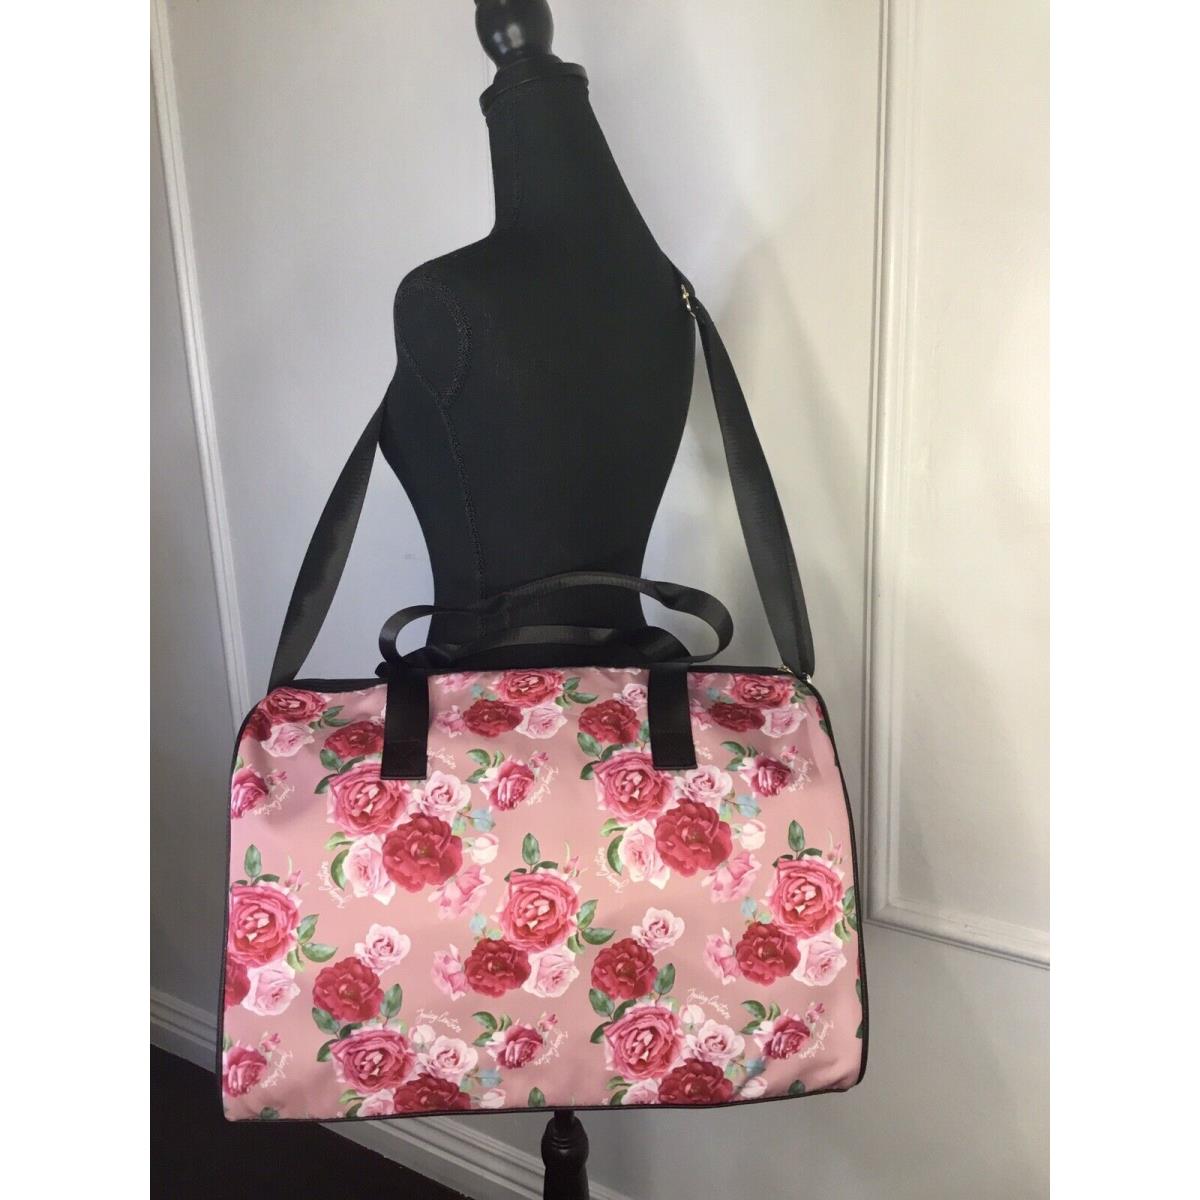 Juicy Couture Romrose Mauve Tote Weekender Bag Luggage Purse